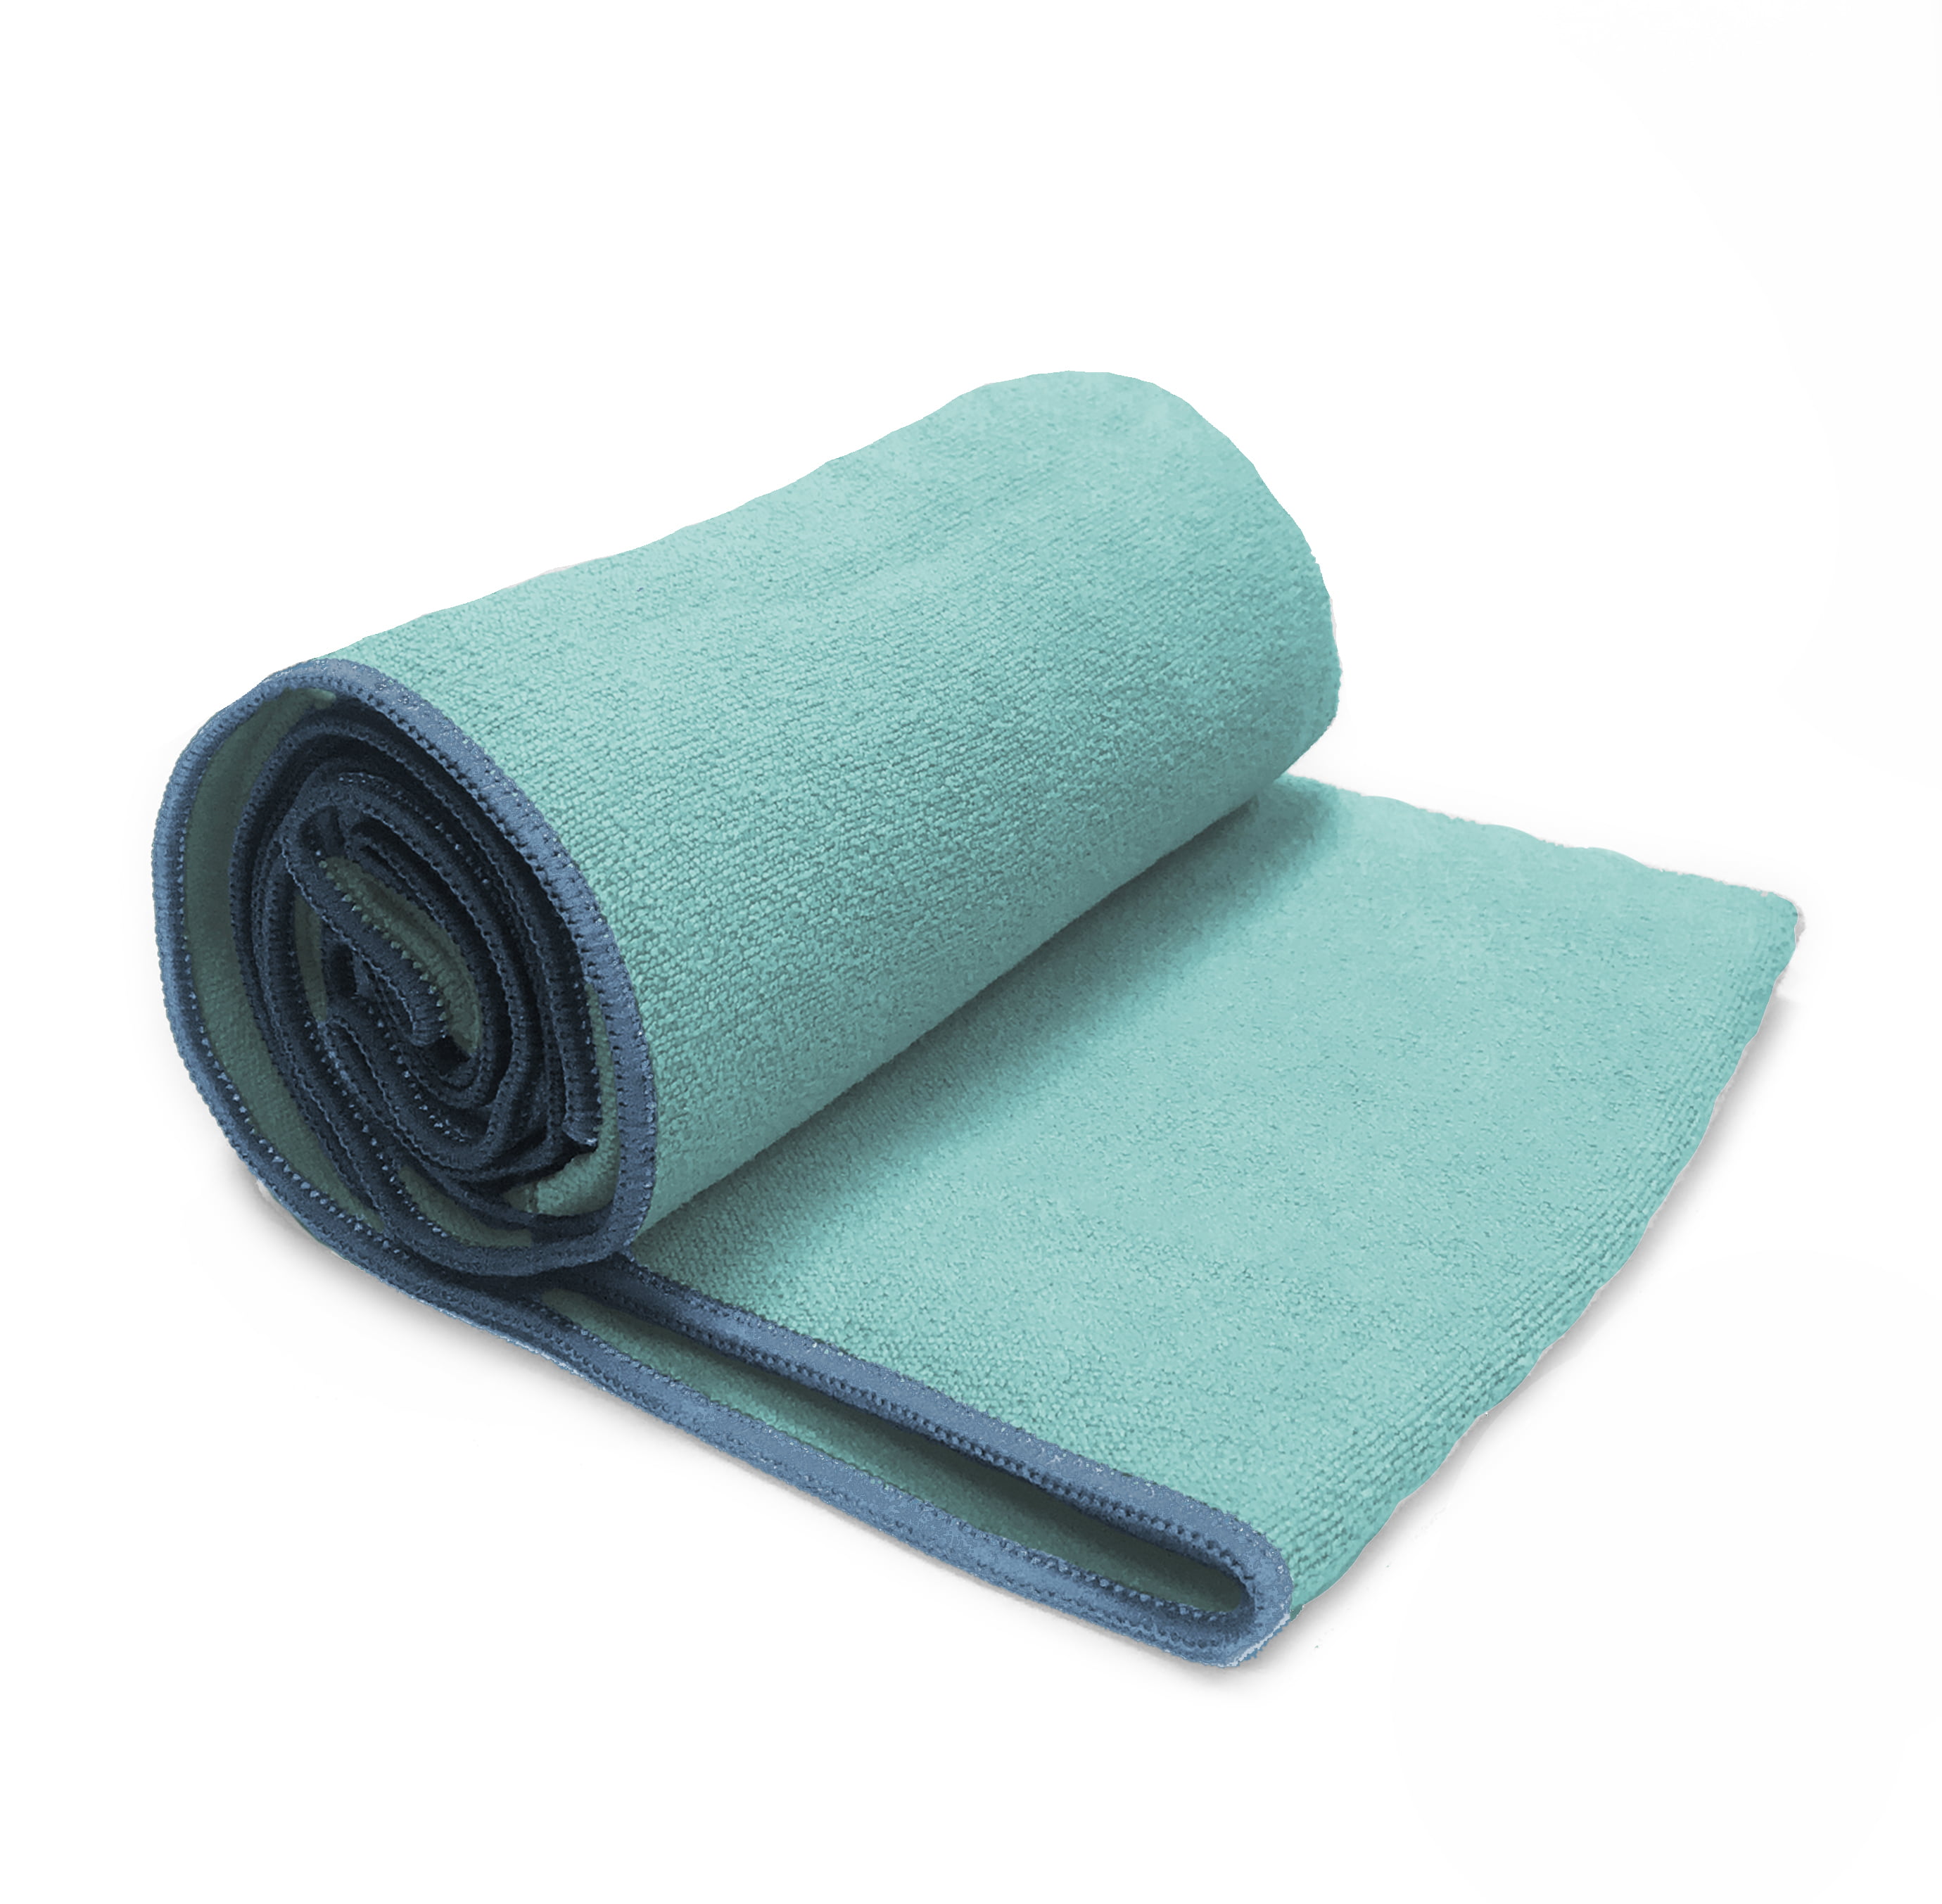 yoga towel walmart